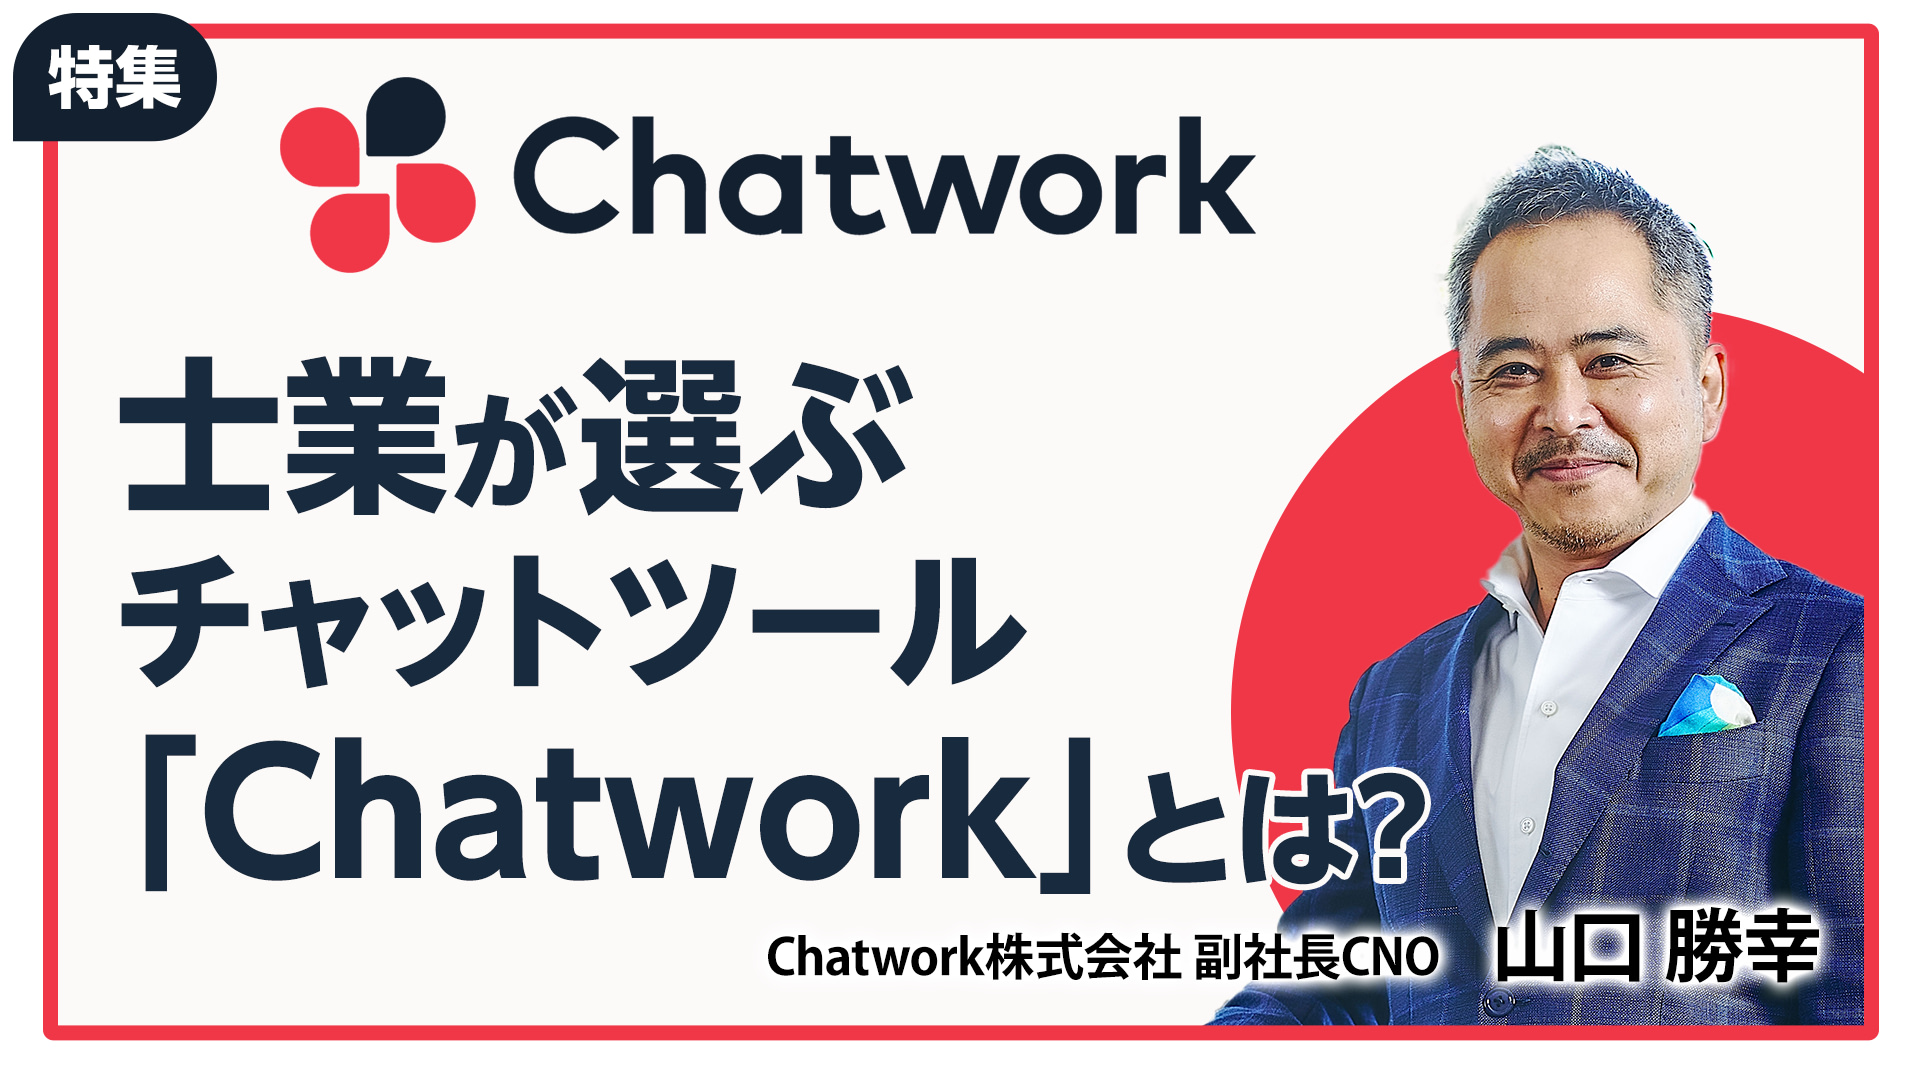 士業が選ぶチャットツール「Chatwork」とは？：Chatwork株式会社副社長CNO　山口 勝幸氏